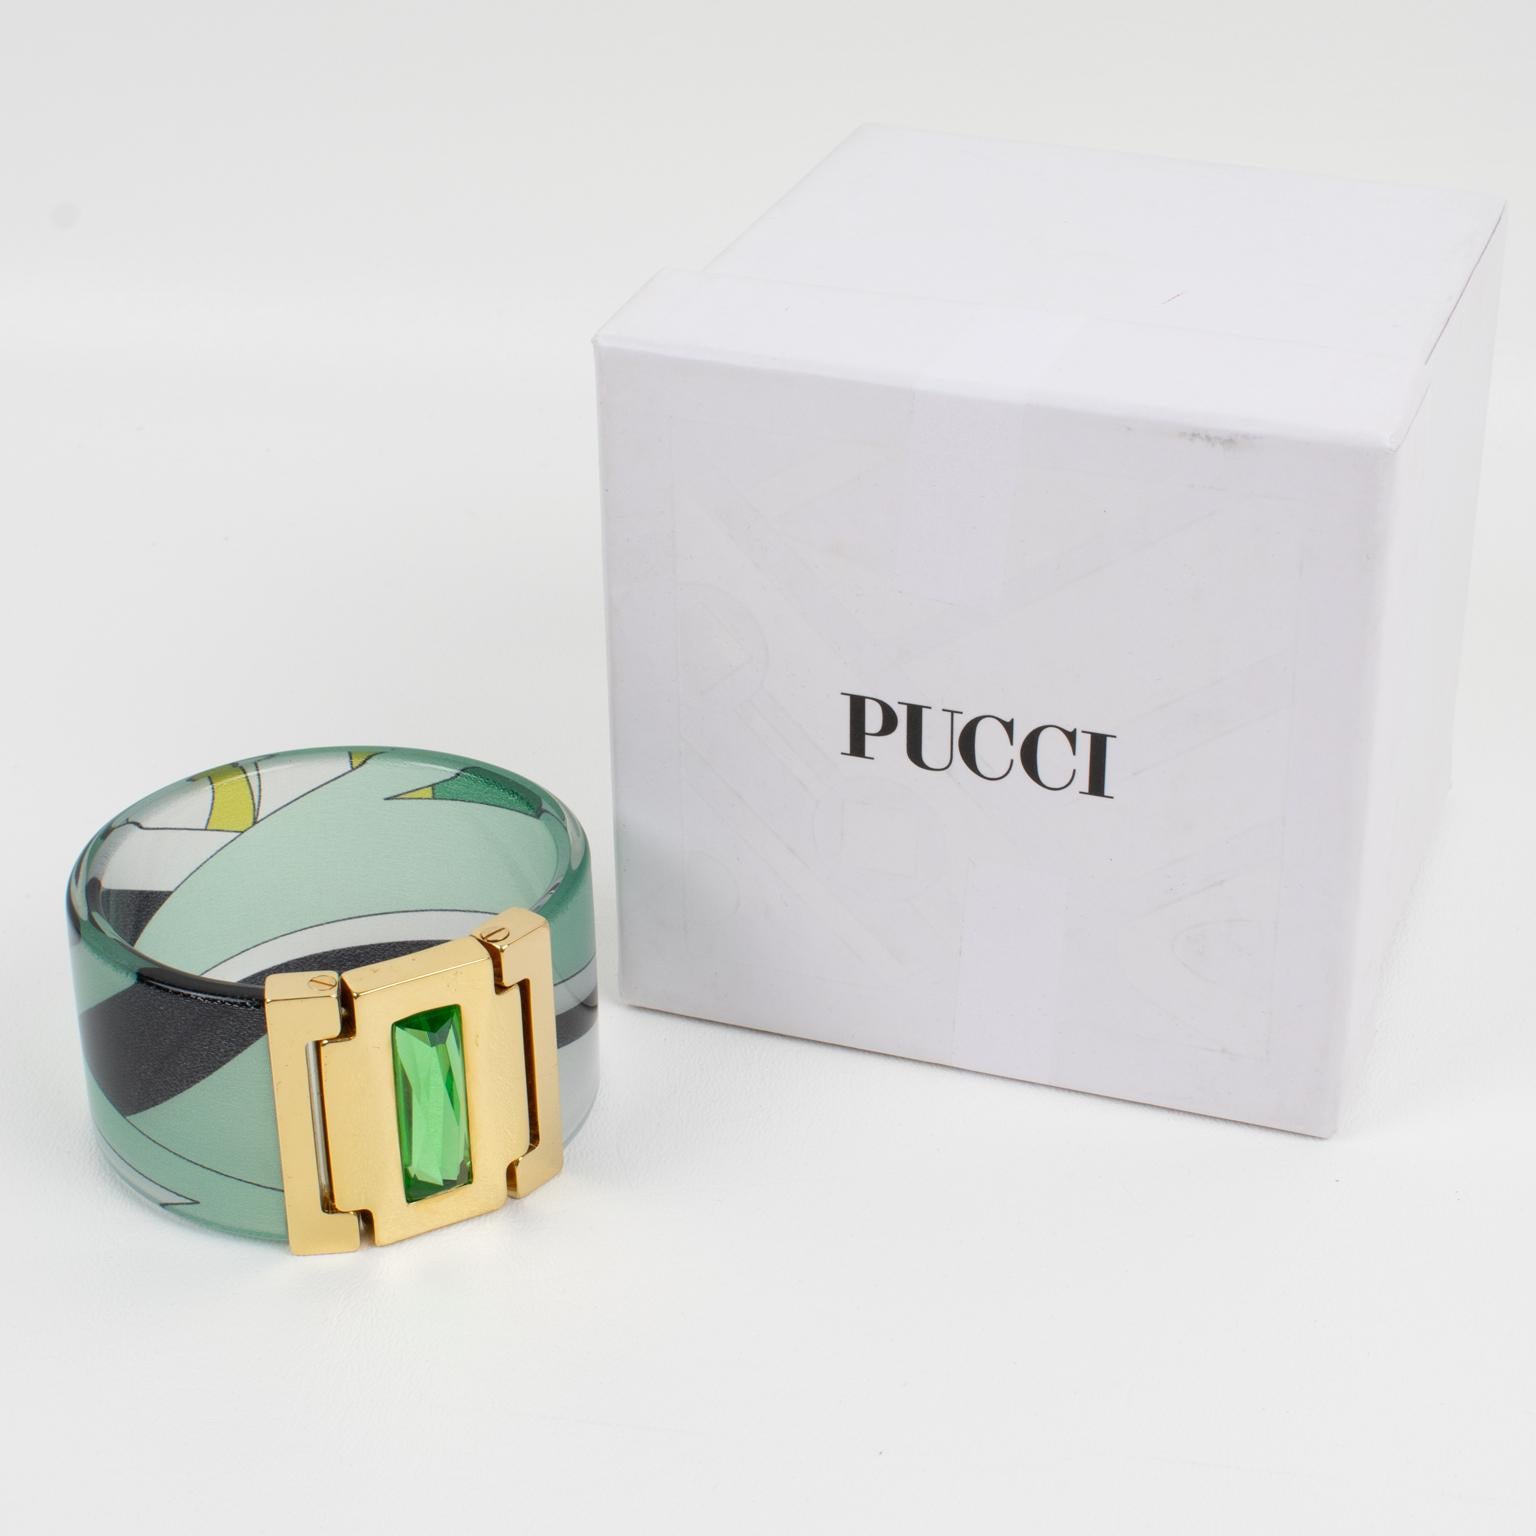 Emilio Pucci a conçu ce joli bracelet en métal doré, acrylique et soie. Ce bracelet massif est composé d'une bande en acrylique transparent et d'une inclusion de soie Pucci multicolore dans les couleurs vert émeraude, vert avocat, noir et blanc. Le